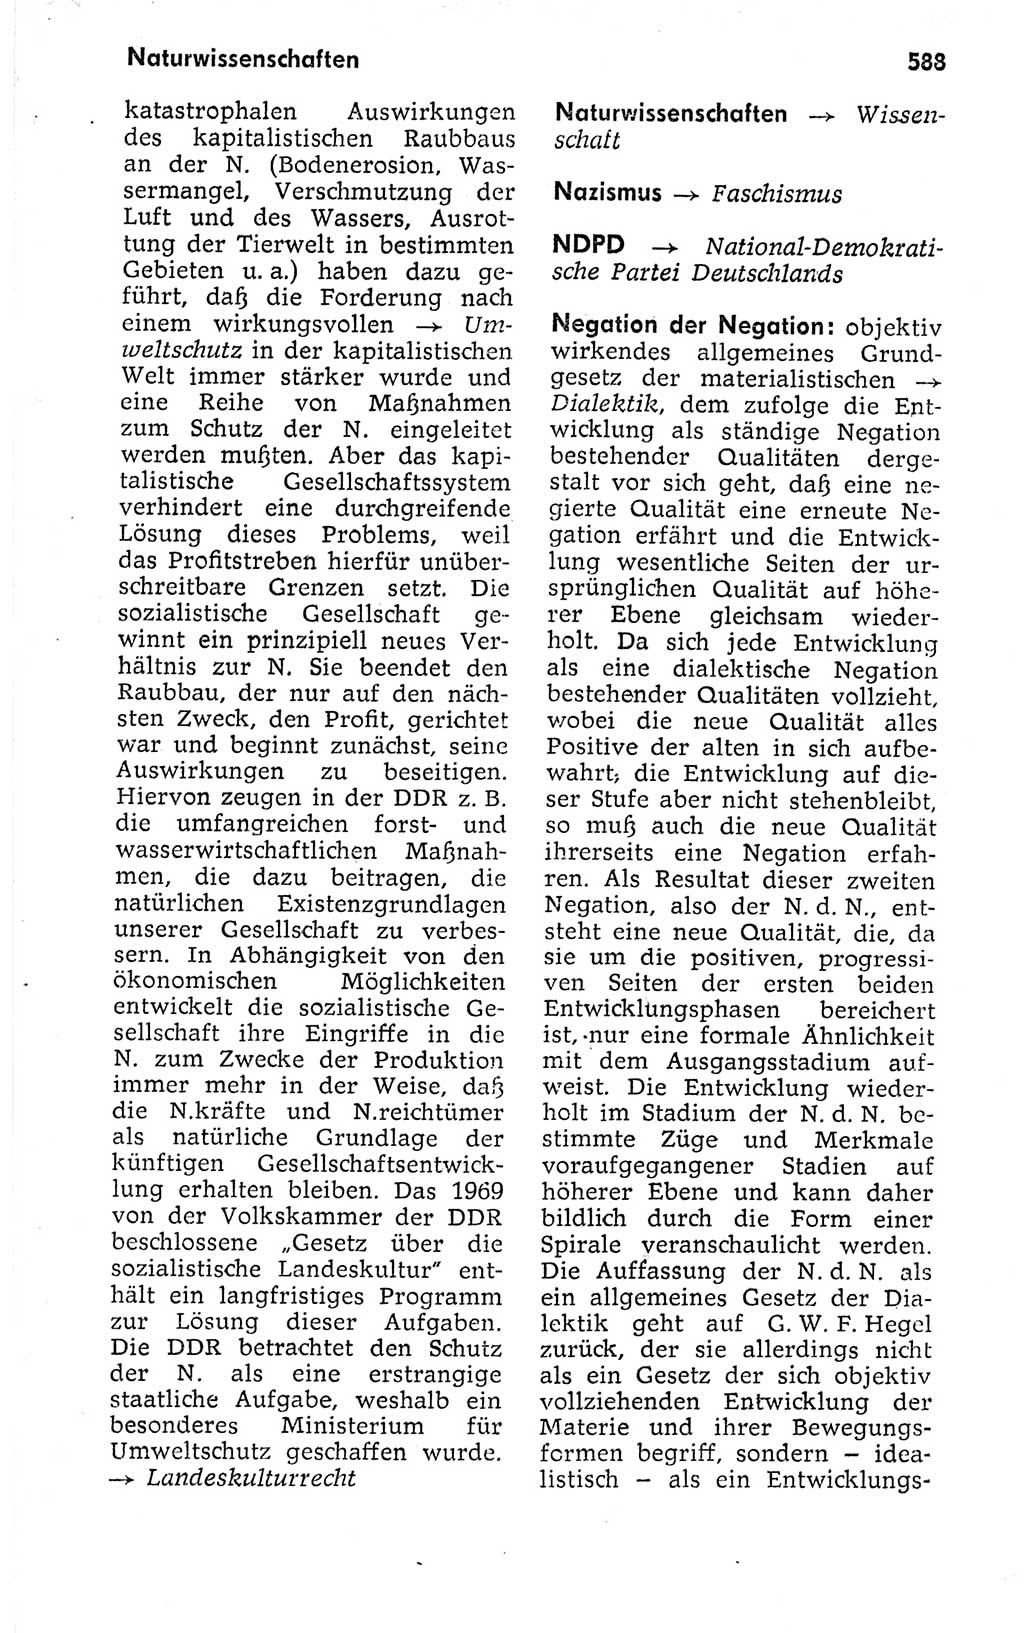 Kleines politisches Wörterbuch [Deutsche Demokratische Republik (DDR)] 1973, Seite 588 (Kl. pol. Wb. DDR 1973, S. 588)